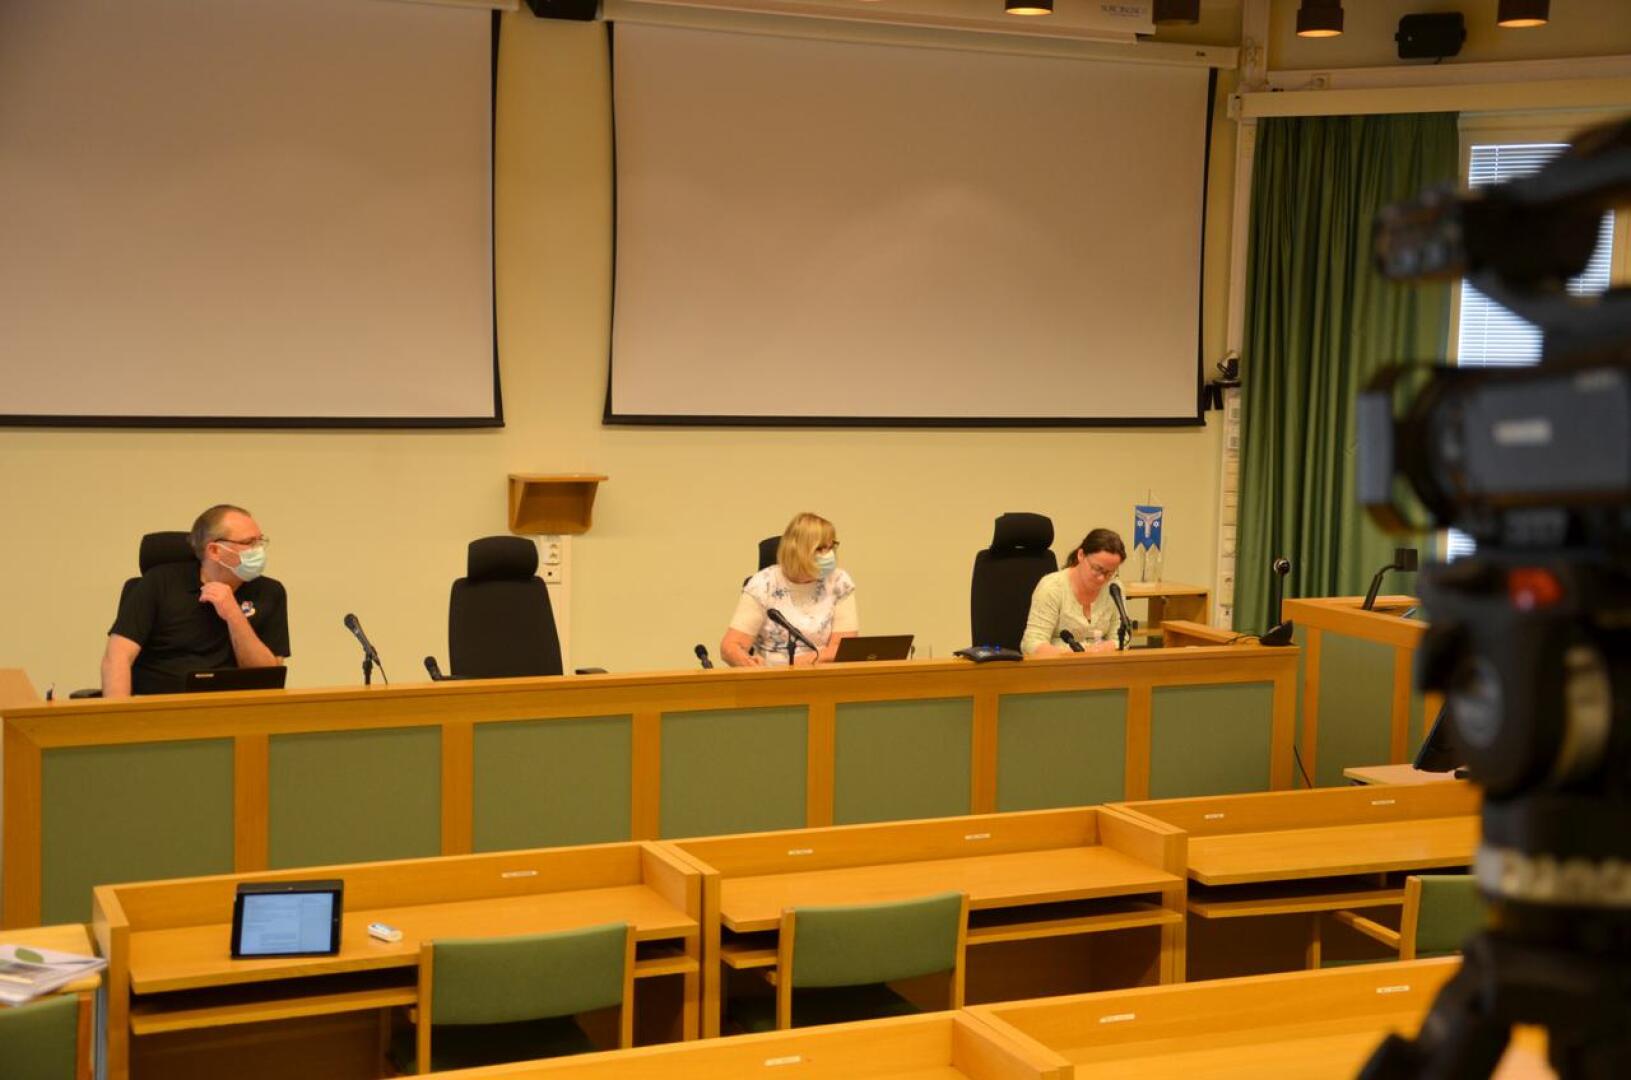 Etäkokous. Kannuksen kaupunginvaltuusto kokous striimattiin valtuustosalista. Paikalla olivat kaupunginjohtaja Jussi Niinistö, talous- ja hallintopäällikkö Leena Sämpi ja valtuuston puheenjohtaja Mari Kerola.